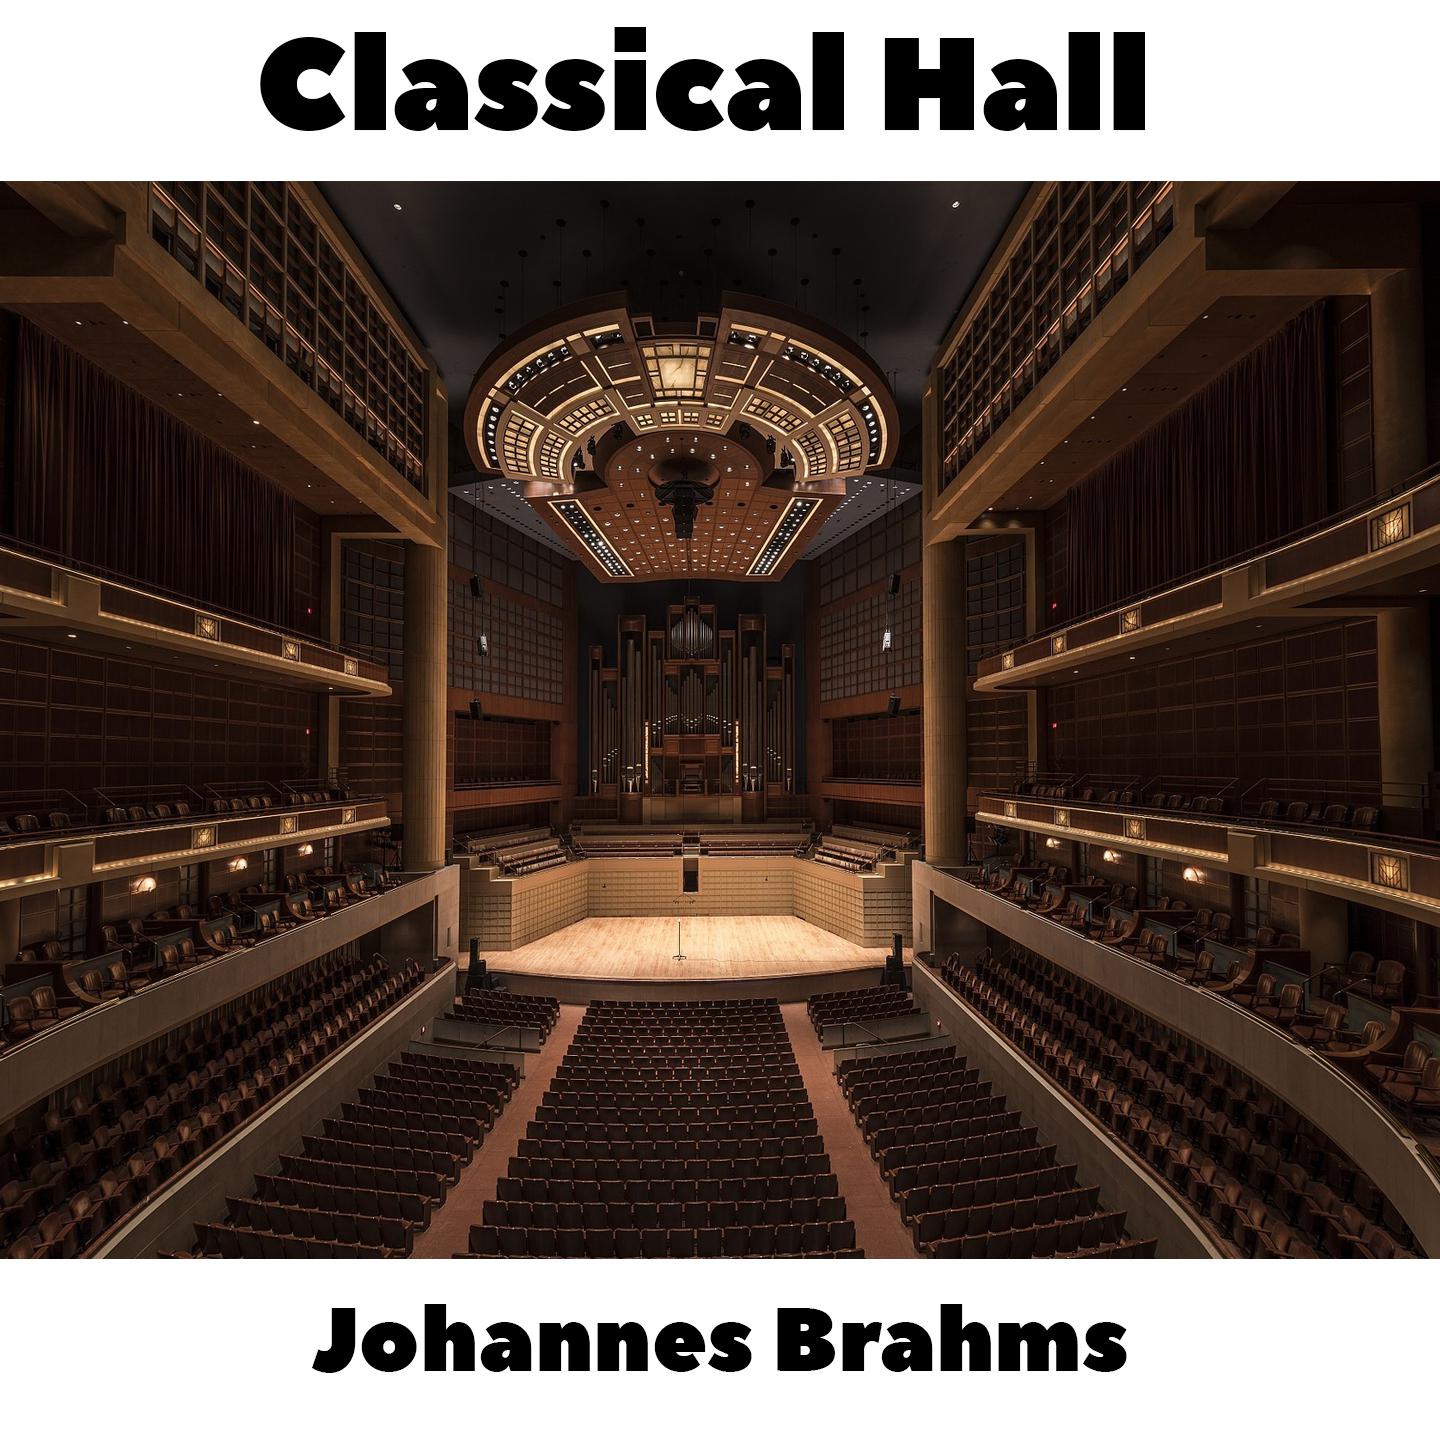 Johannes Brahms -  16 Waltzes, Op.39 - No.11 in B-